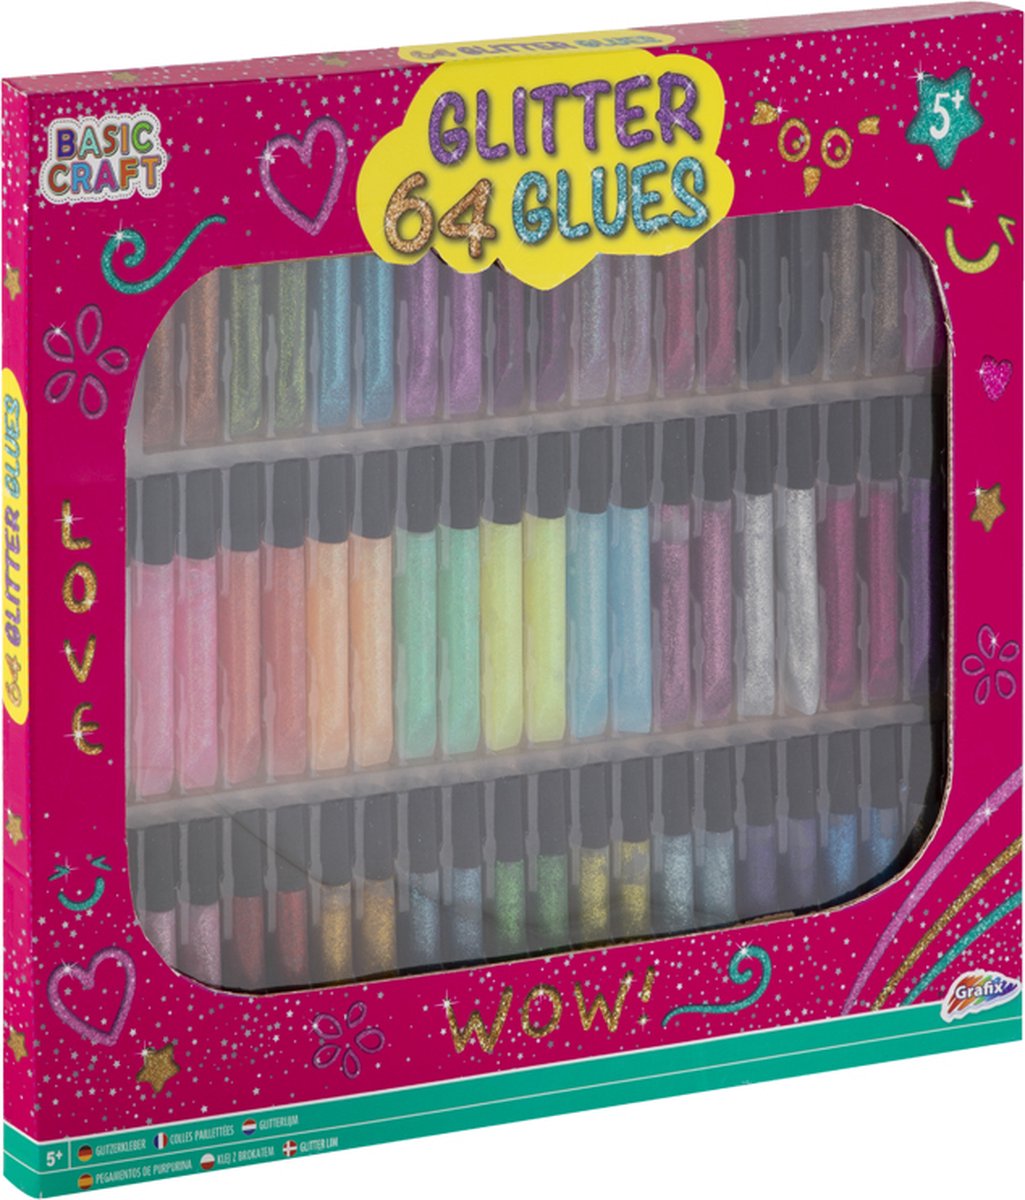 Glitterlijm | 64 tubes - 32 verschillende kleuren x 2 tubes | 10 ML per tube | knutselen | speelgoed voor kinderen | Grafix